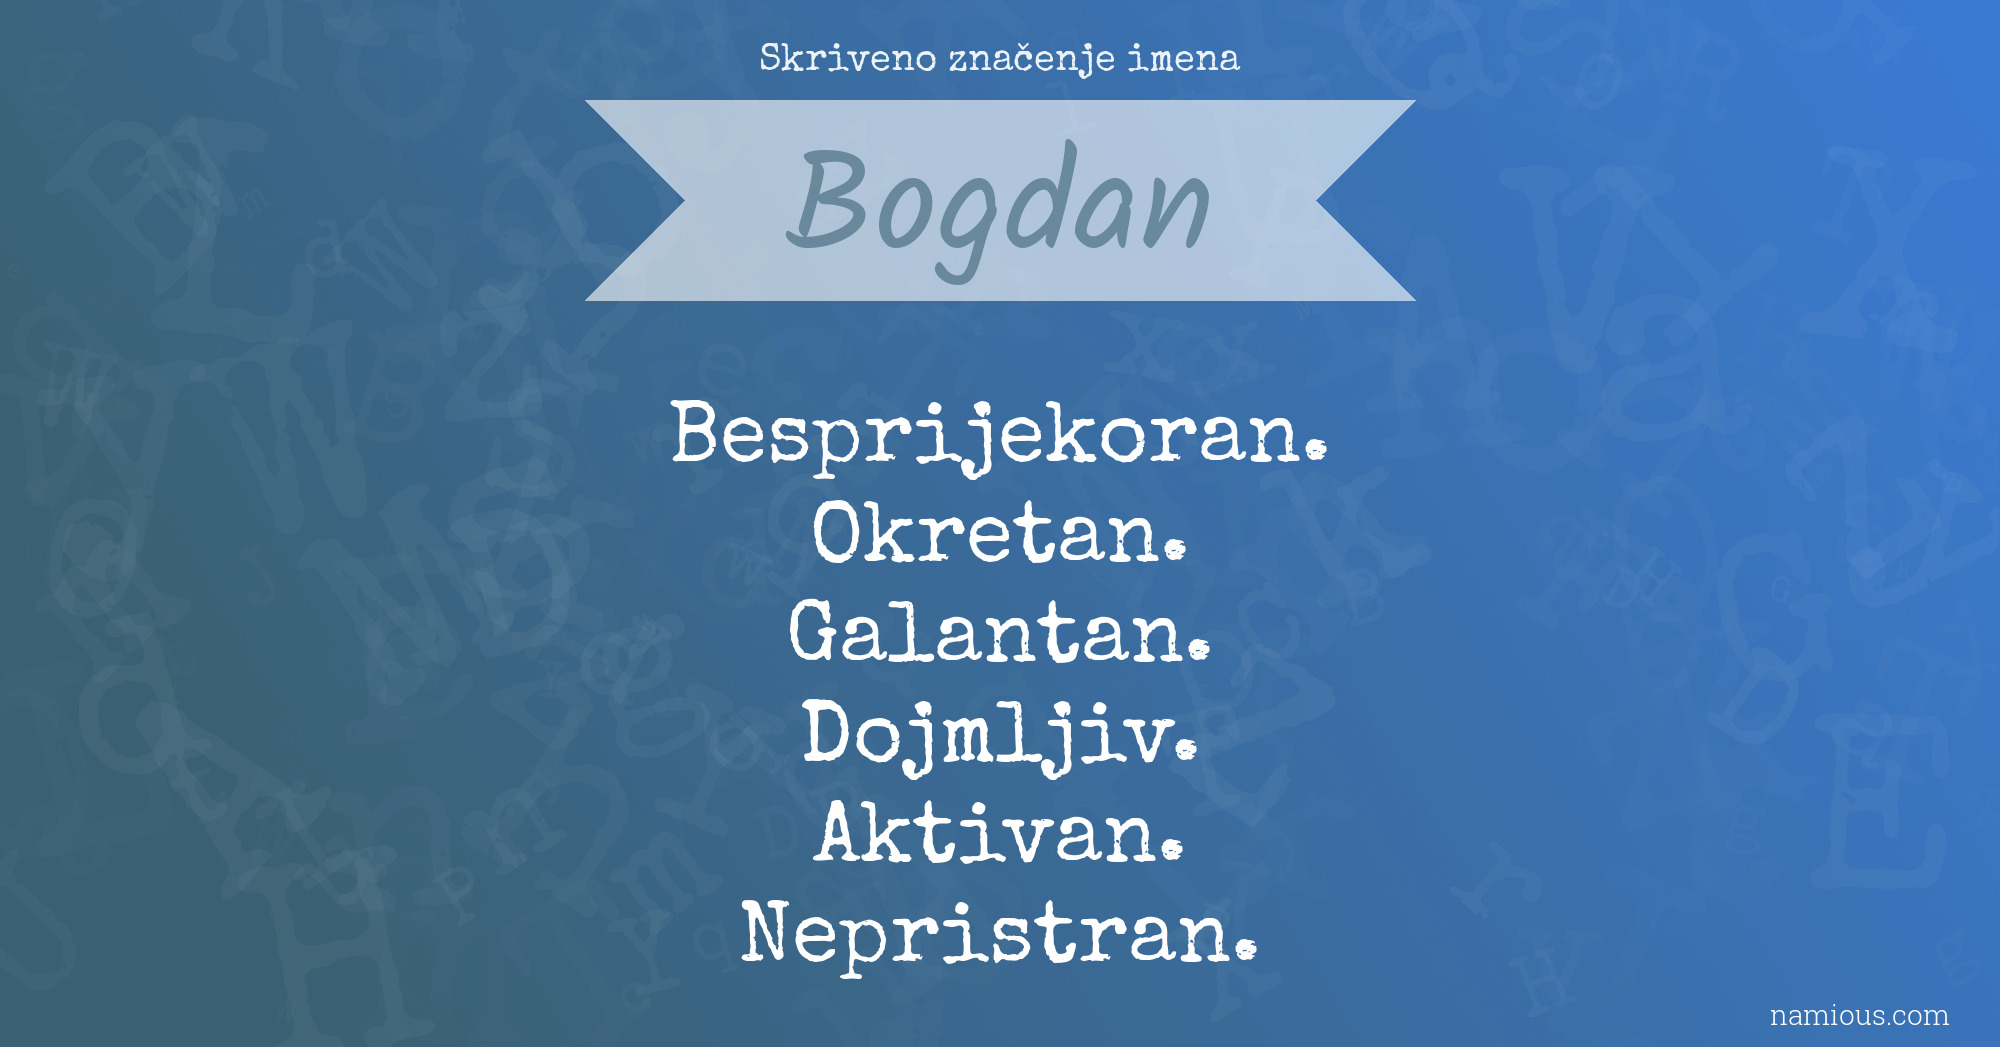 Skriveno značenje imena Bogdan